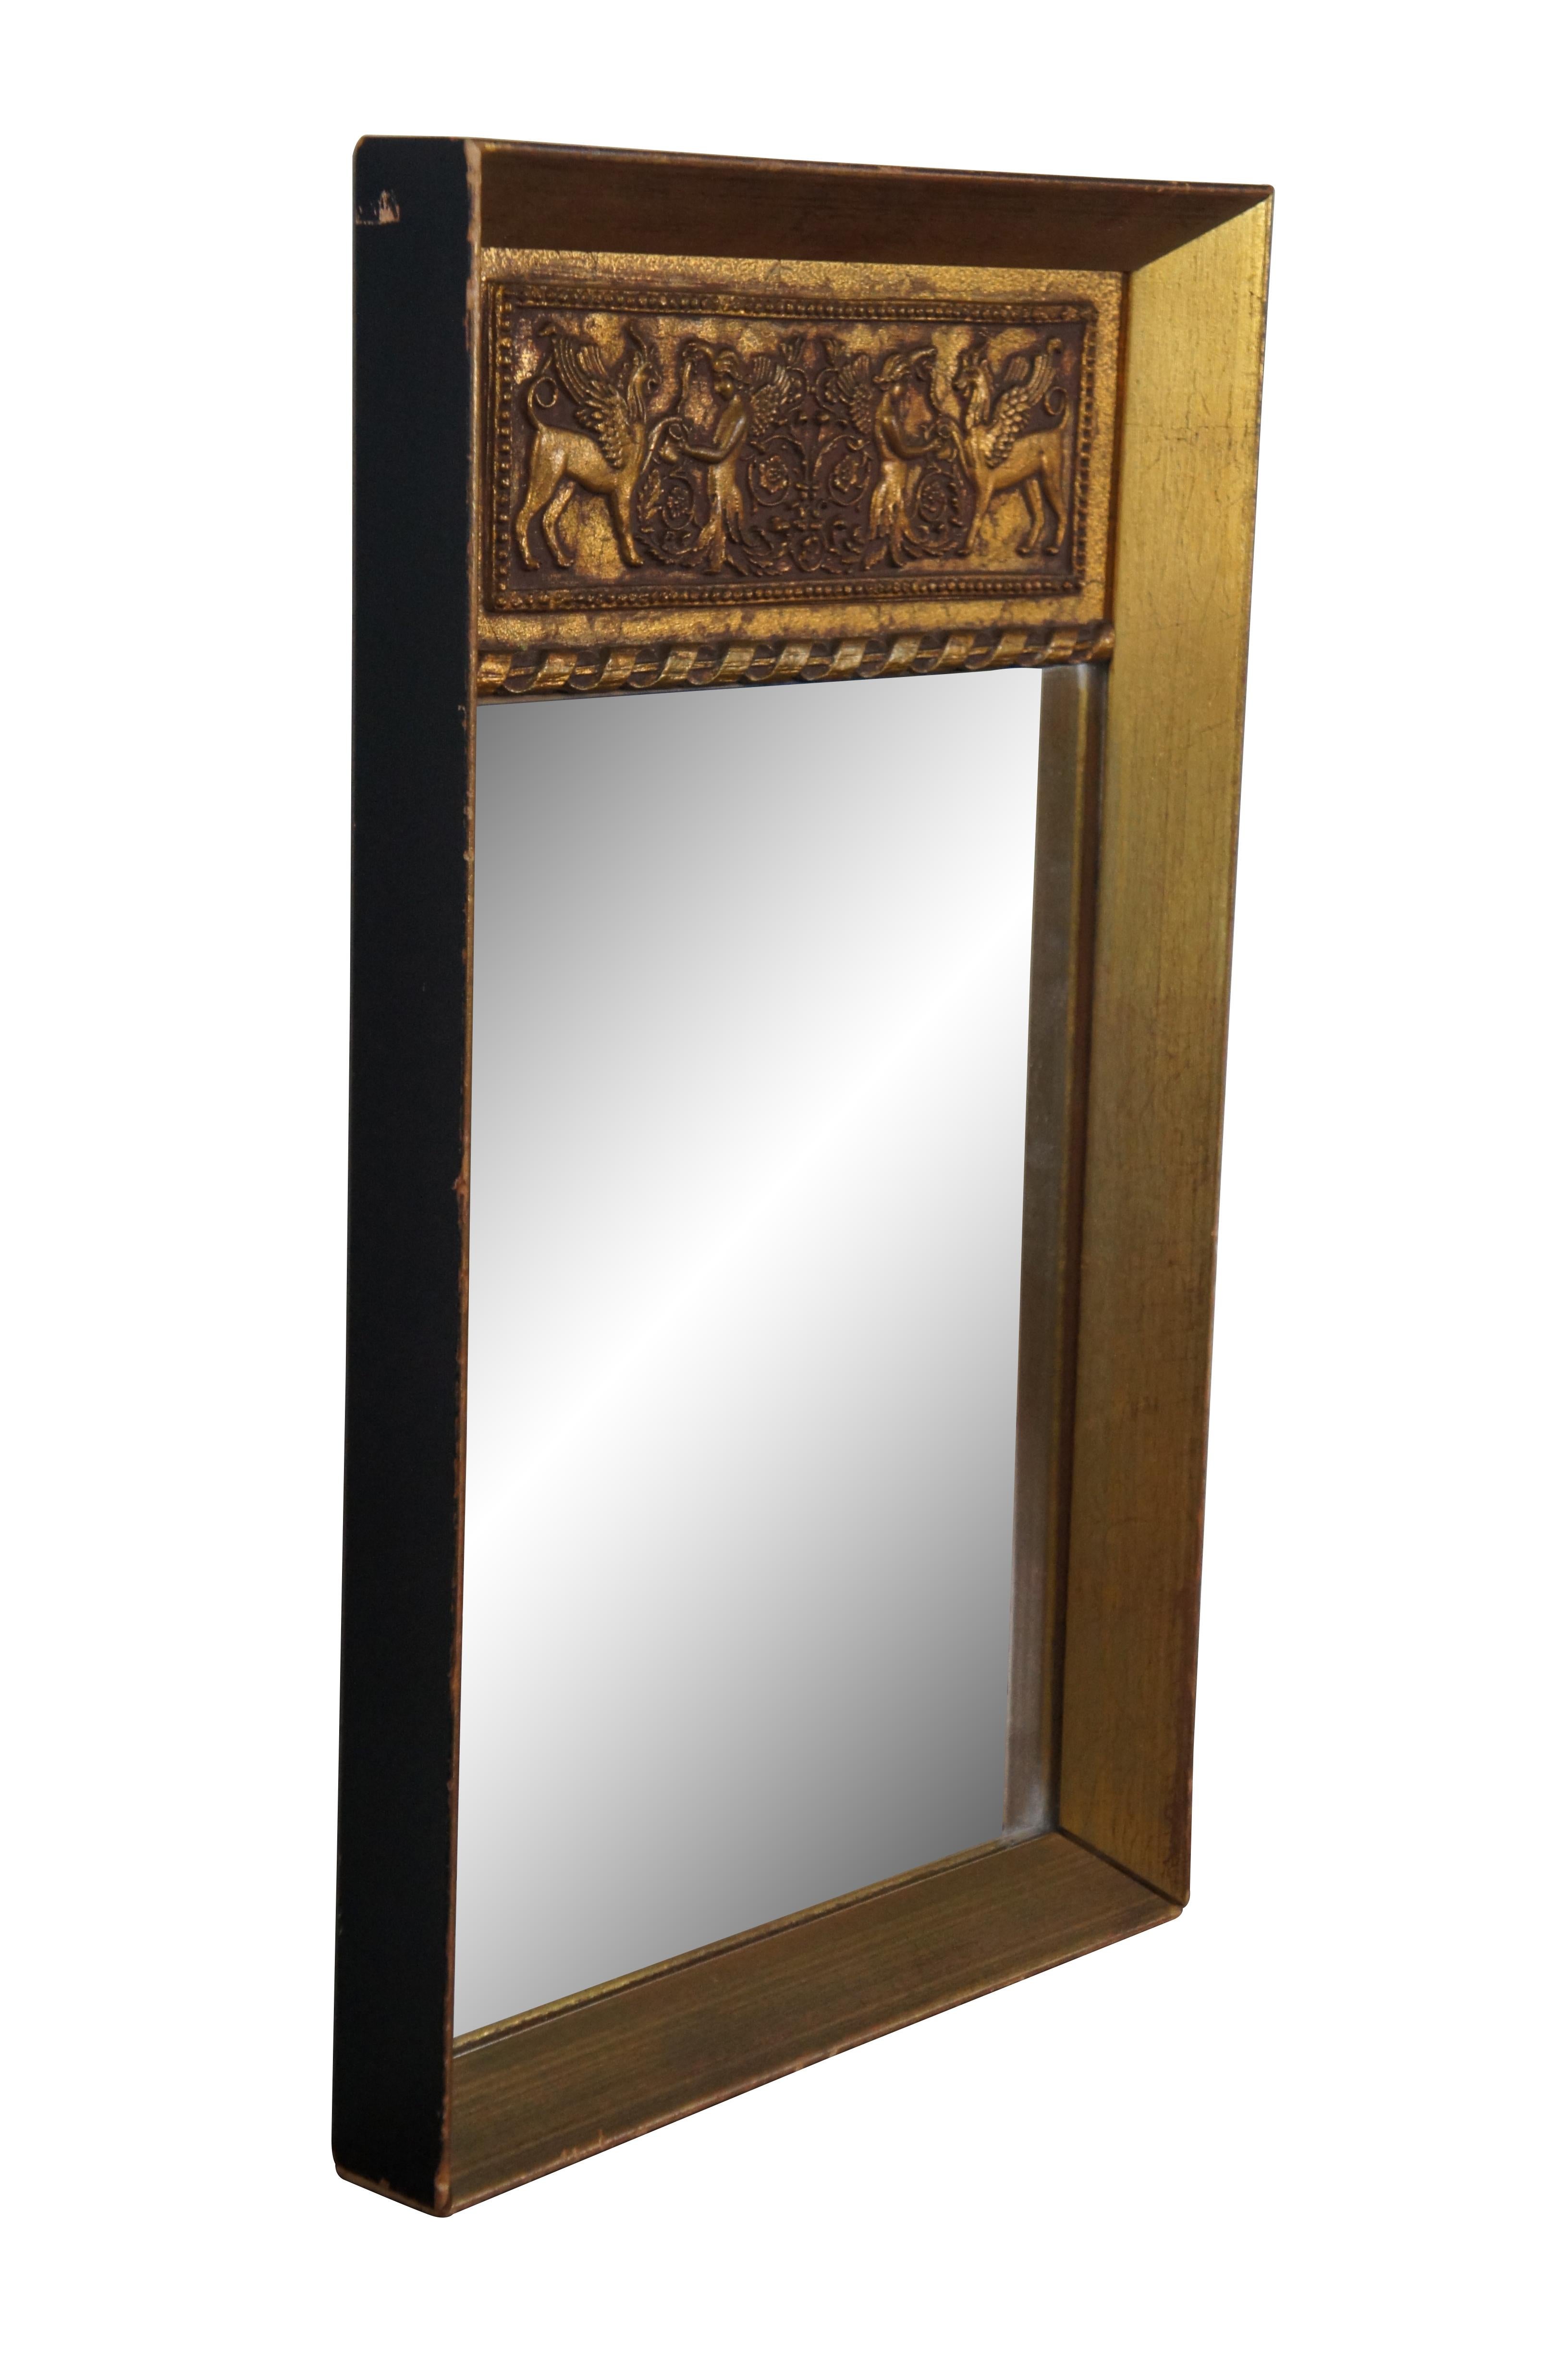 Vintage-Wandspiegel aus vergoldetem Holz im Trumeau-Stil mit einem rechteckigen, abgeschrägten Rahmen, der von einem spiralförmigen Band gekrönt wird, das den Spiegel von einem neoklassizistischen Relief trennt, das eine geflügelte Engelsfigur